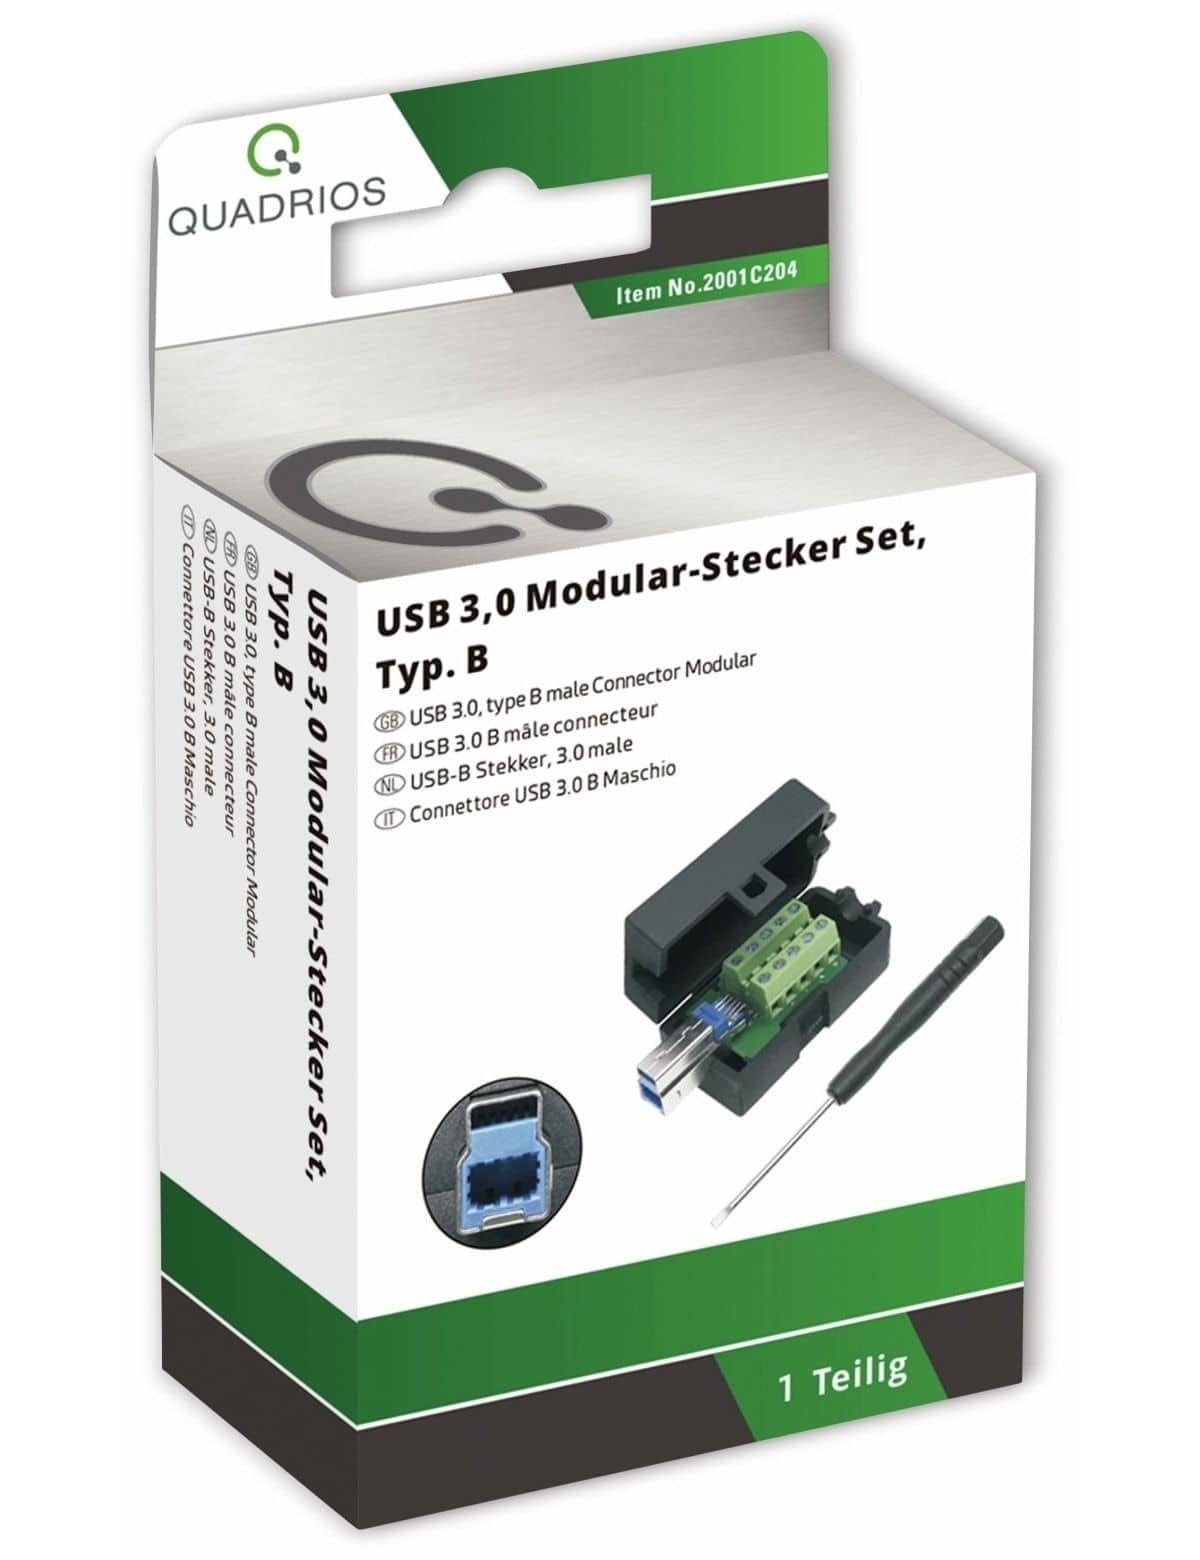 3.0 Quadrios 2001C204, Klemmen USB QUADRIOS, - USB-Modular-Set,